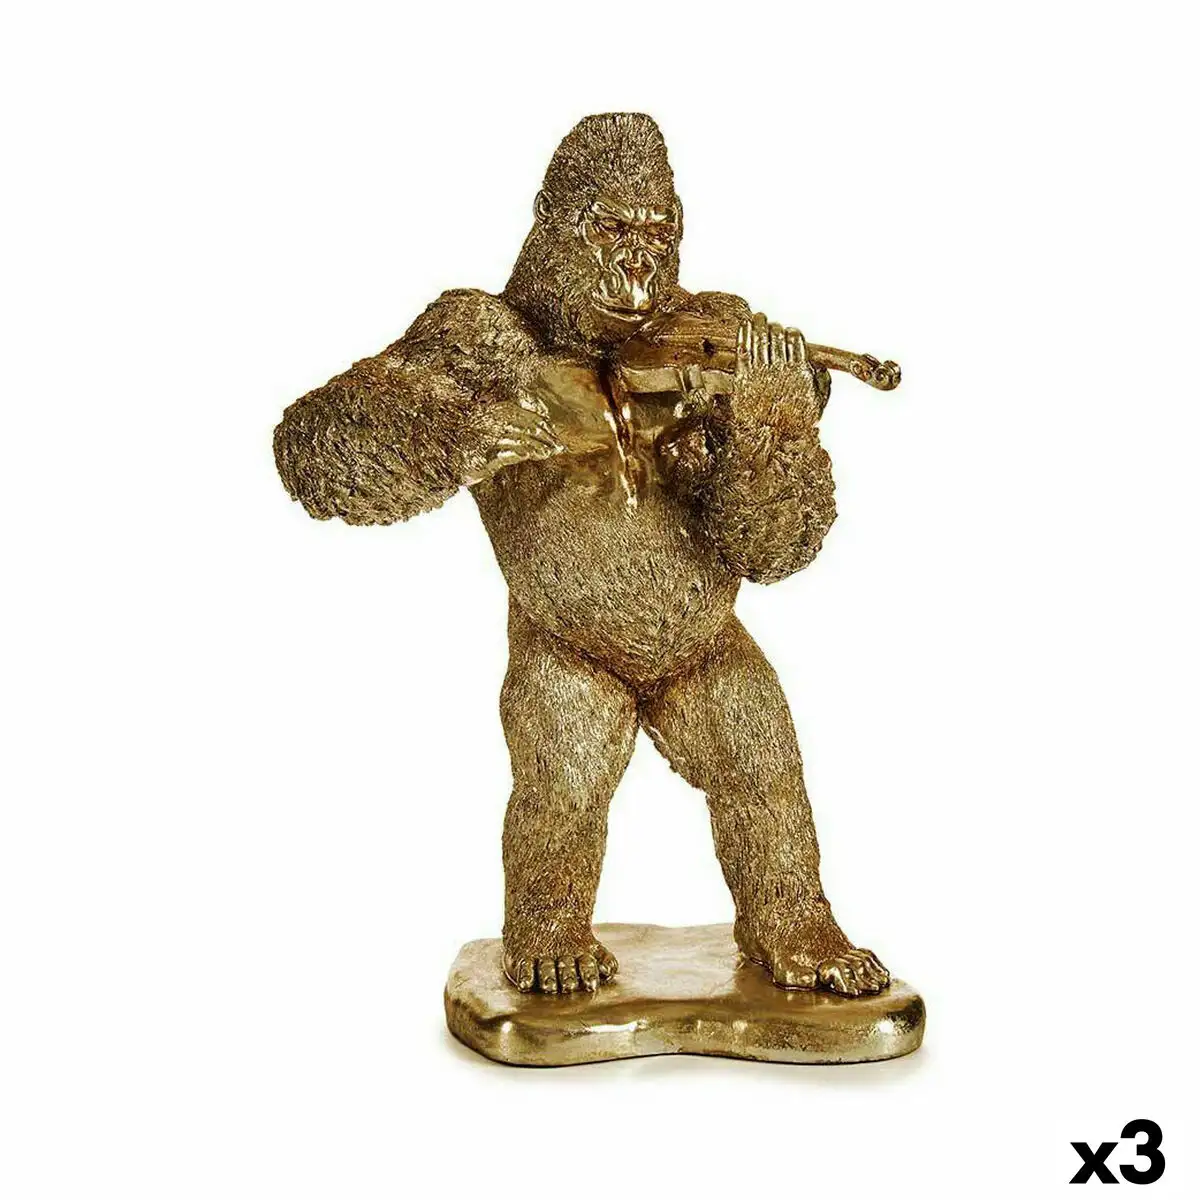 Figurine decorative gorille violon dore 16 x 40 x 30 cm 3 unites _2606. Bienvenue chez DIAYTAR SENEGAL - Où Chaque Objet a son Histoire. Découvrez notre sélection méticuleuse et choisissez des articles qui racontent l'âme du Sénégal.